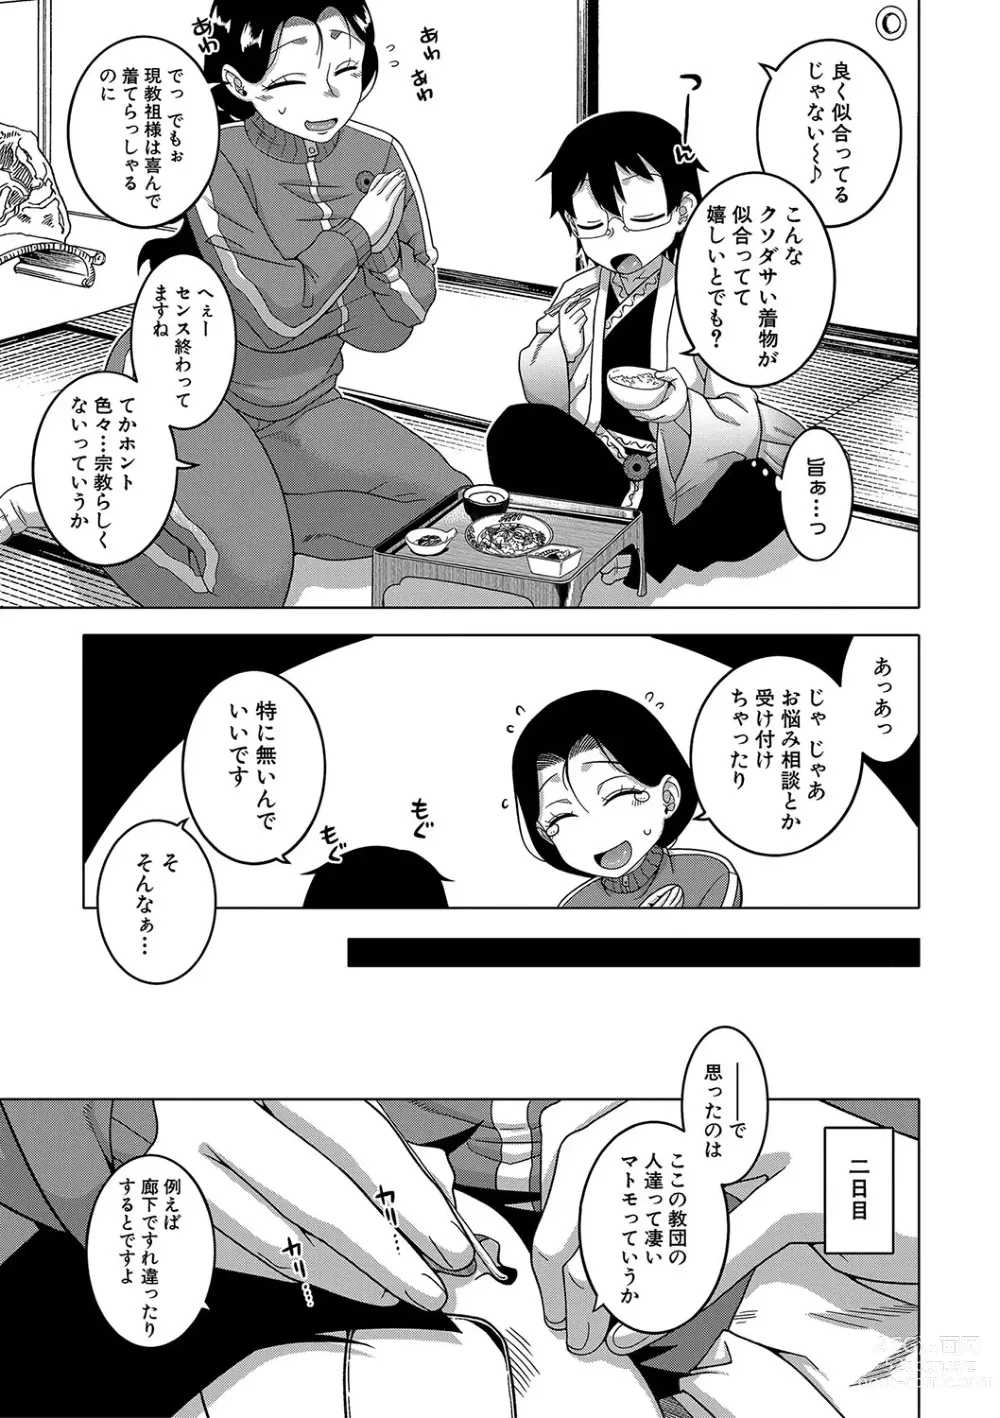 Page 14 of manga Kami-sama no Tsukurikata